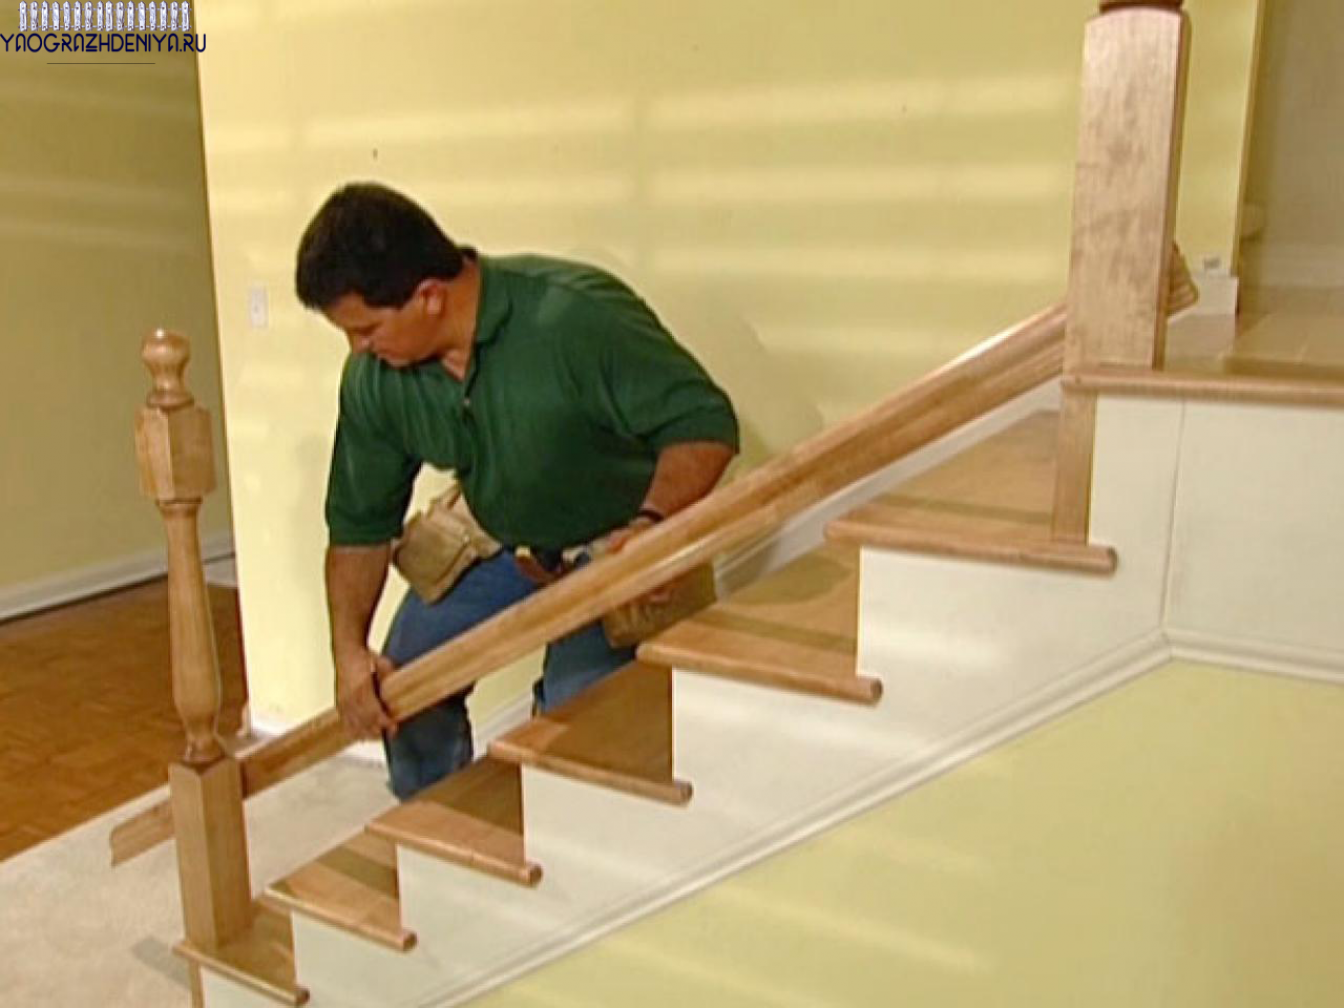 Установка ступенек. Крепление деревянной лестницы. Монтаж деревянной лестницы. Перила деревянные для лестниц. Сборка лестницы из дерева.